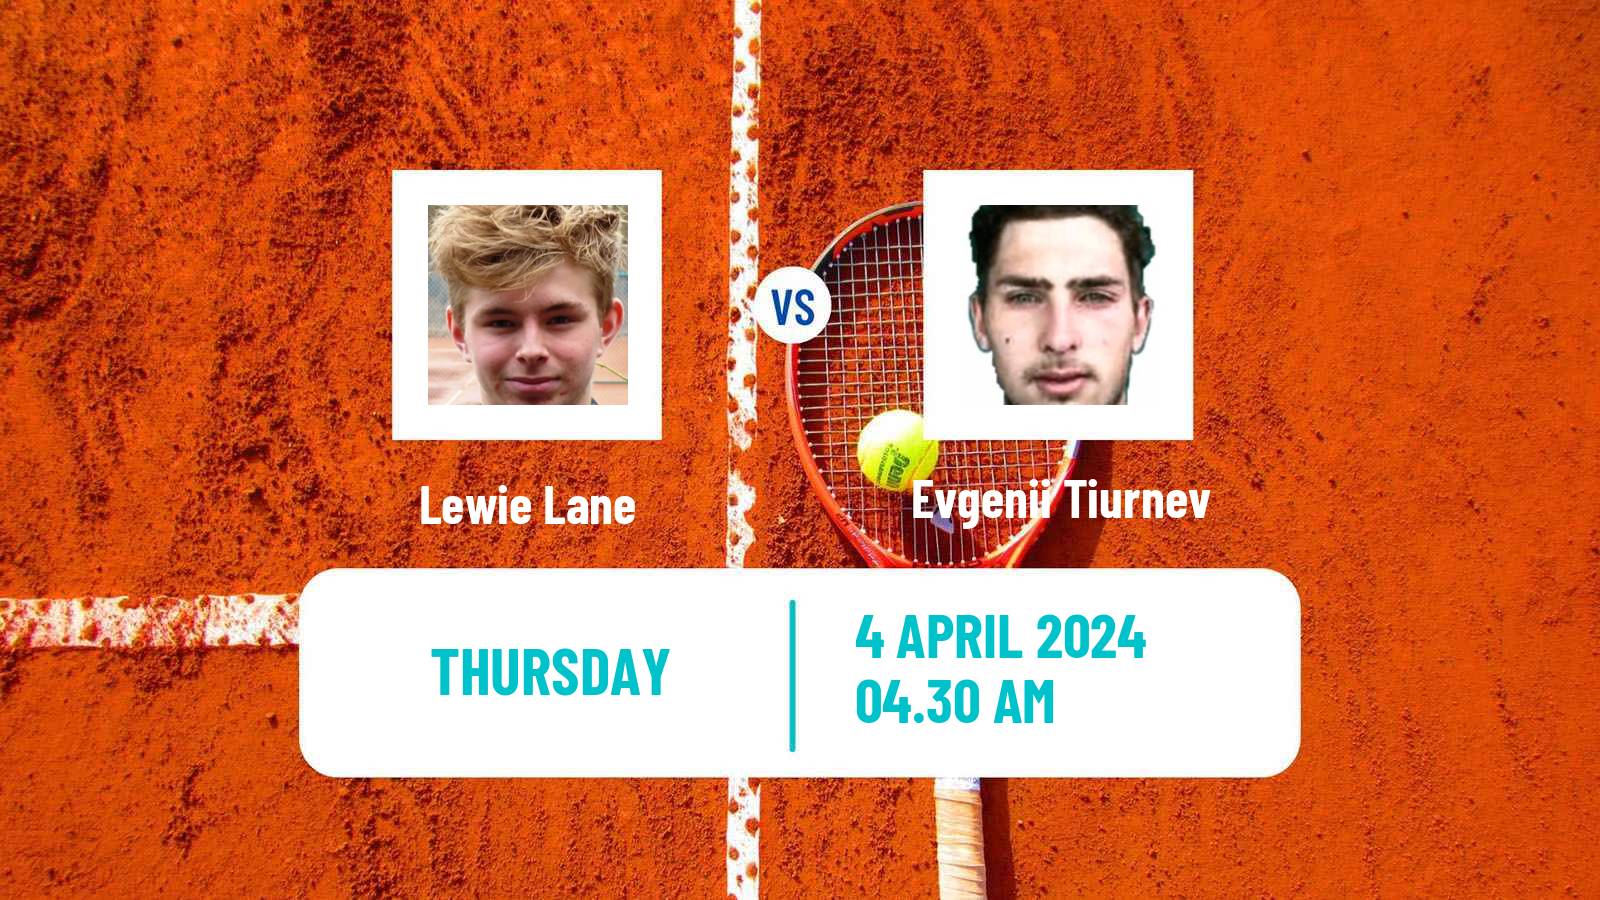 Tennis ITF M15 Antalya 9 Men Lewie Lane - Evgenii Tiurnev